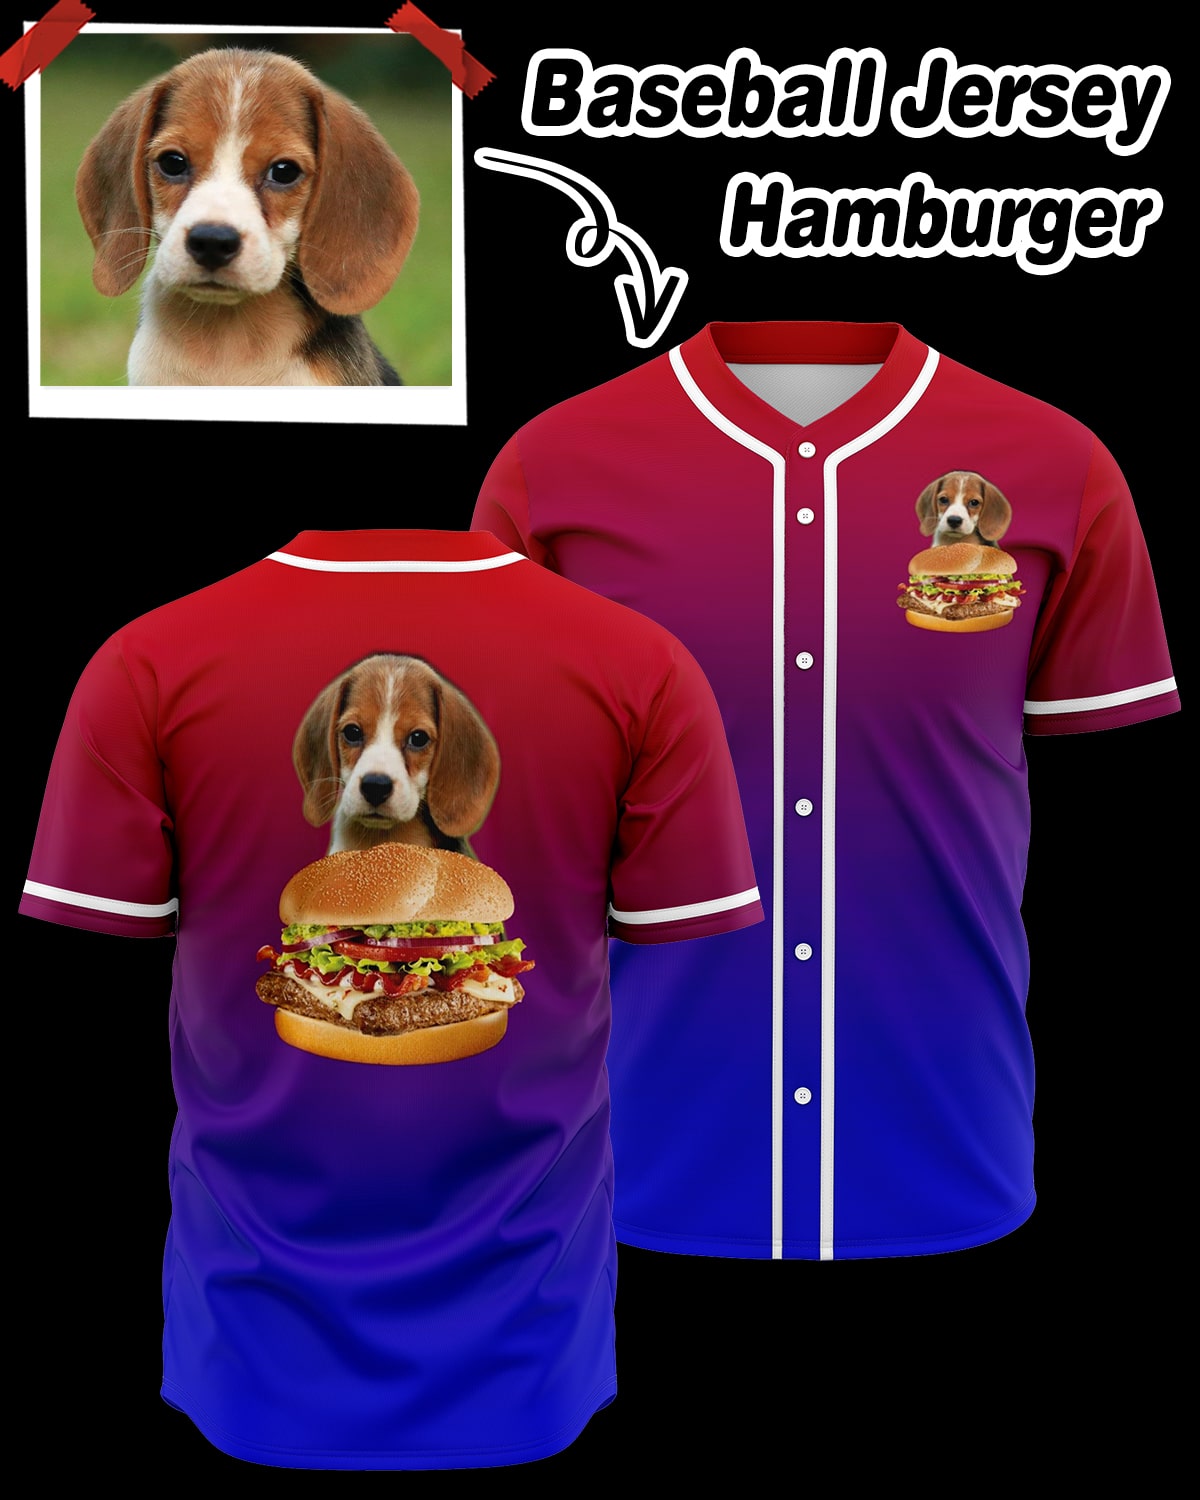 Personalized Unisex Baseball Jersey - Hamburger - ASDF Print